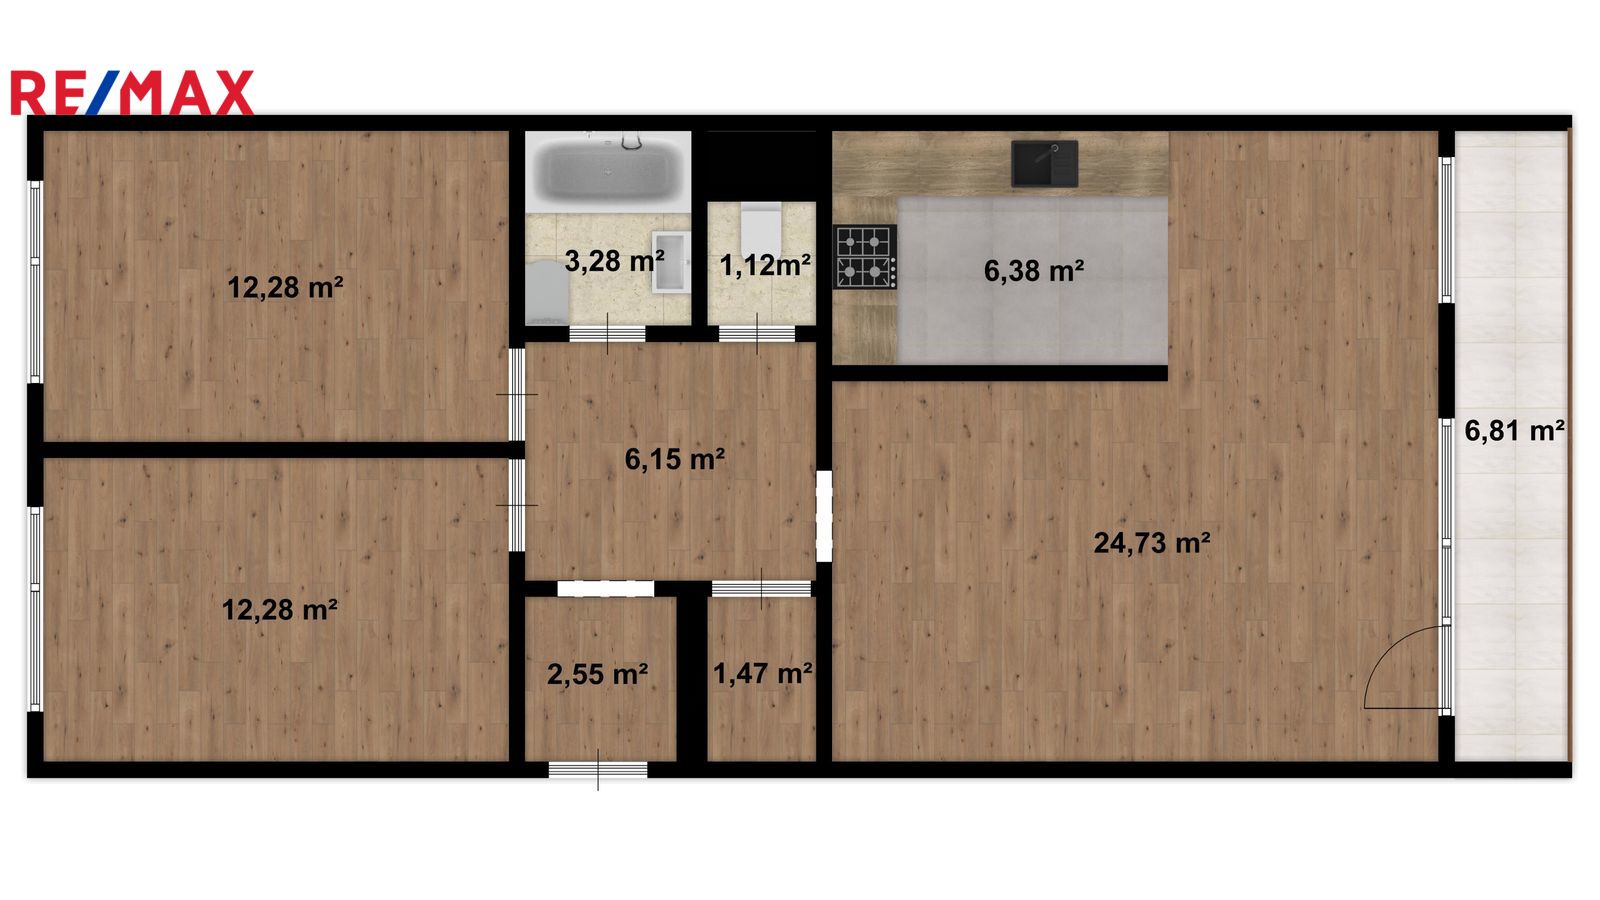 Prodej bytu 3+kk v osobním vlastnictví, 79 m2, Praha 5 - Stodůlky